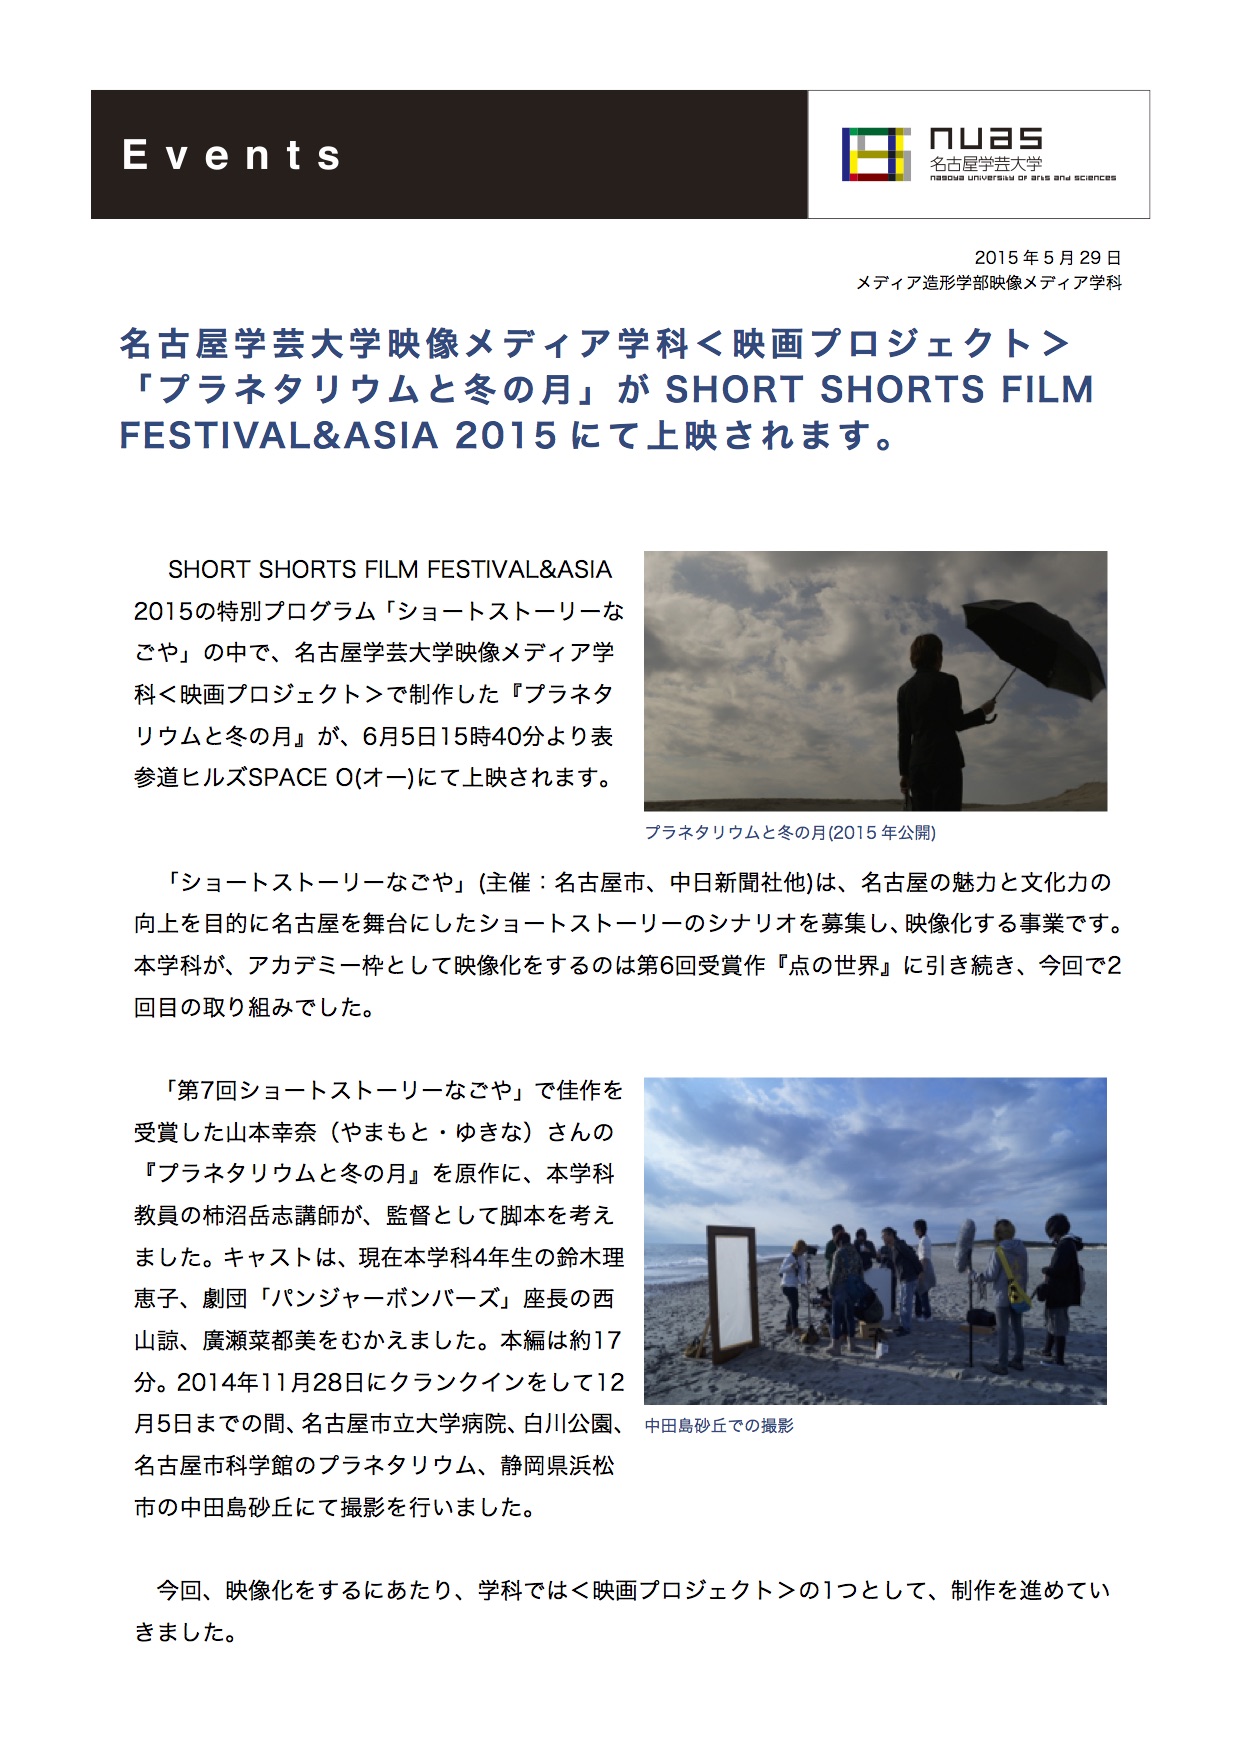 映画プロジェクト プラネタリウムと冬の月 東京上映決定 映像メディア学科 名古屋学芸大学